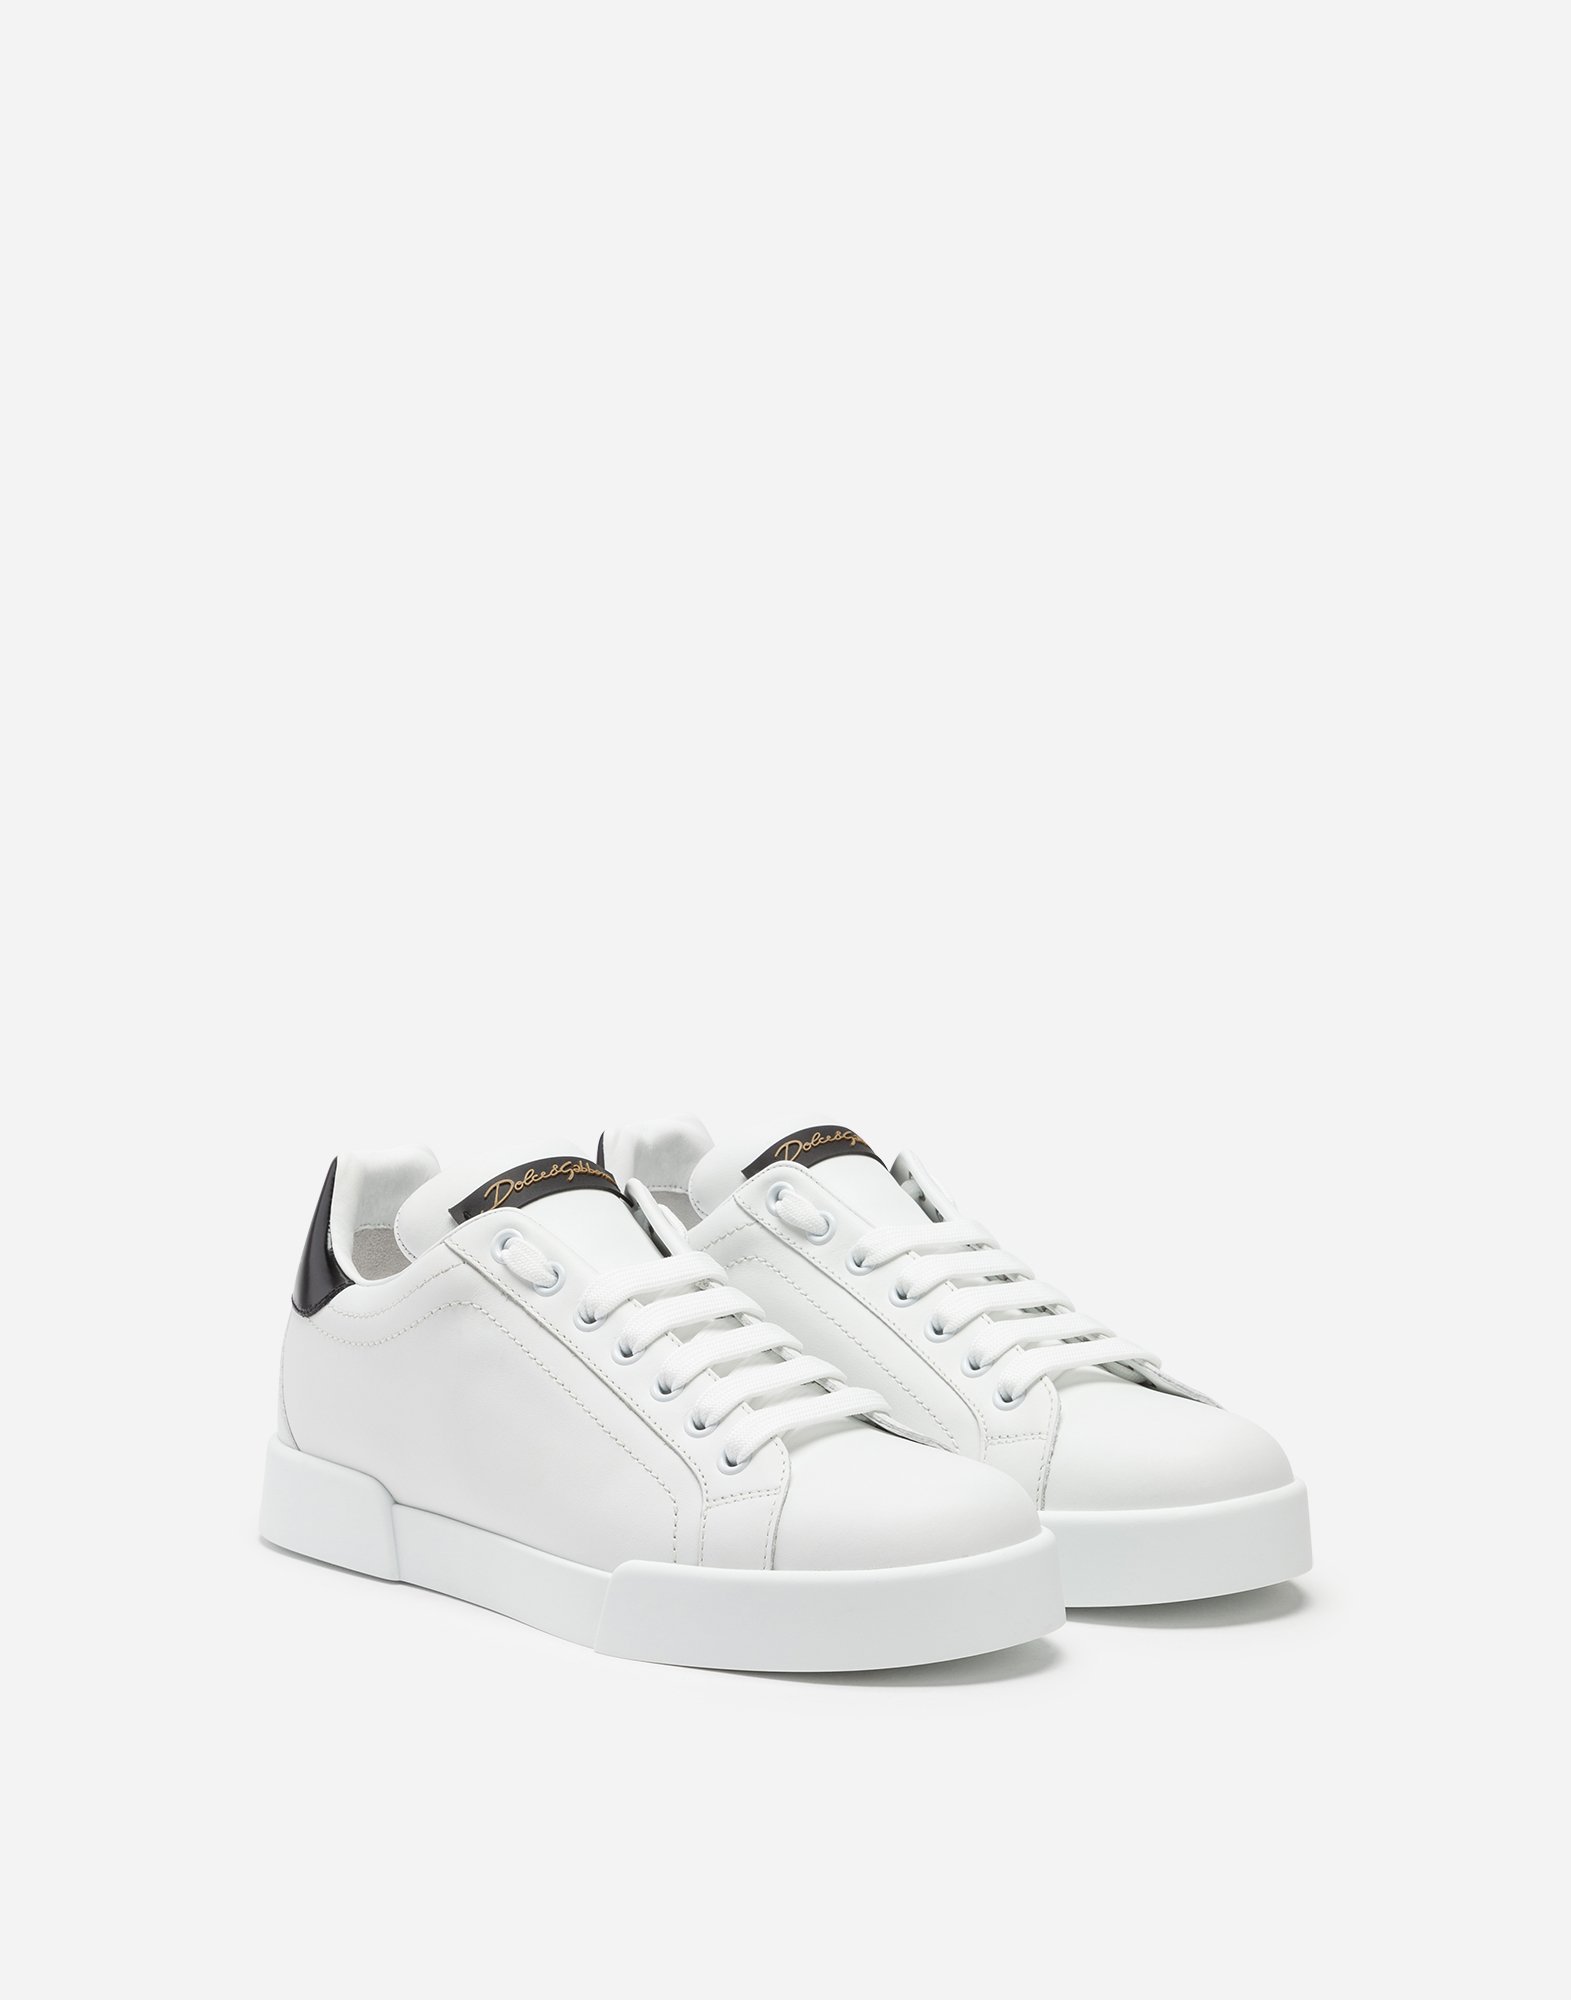 Dolce & Gabbana Leather Portofino sneakers - Men White 2